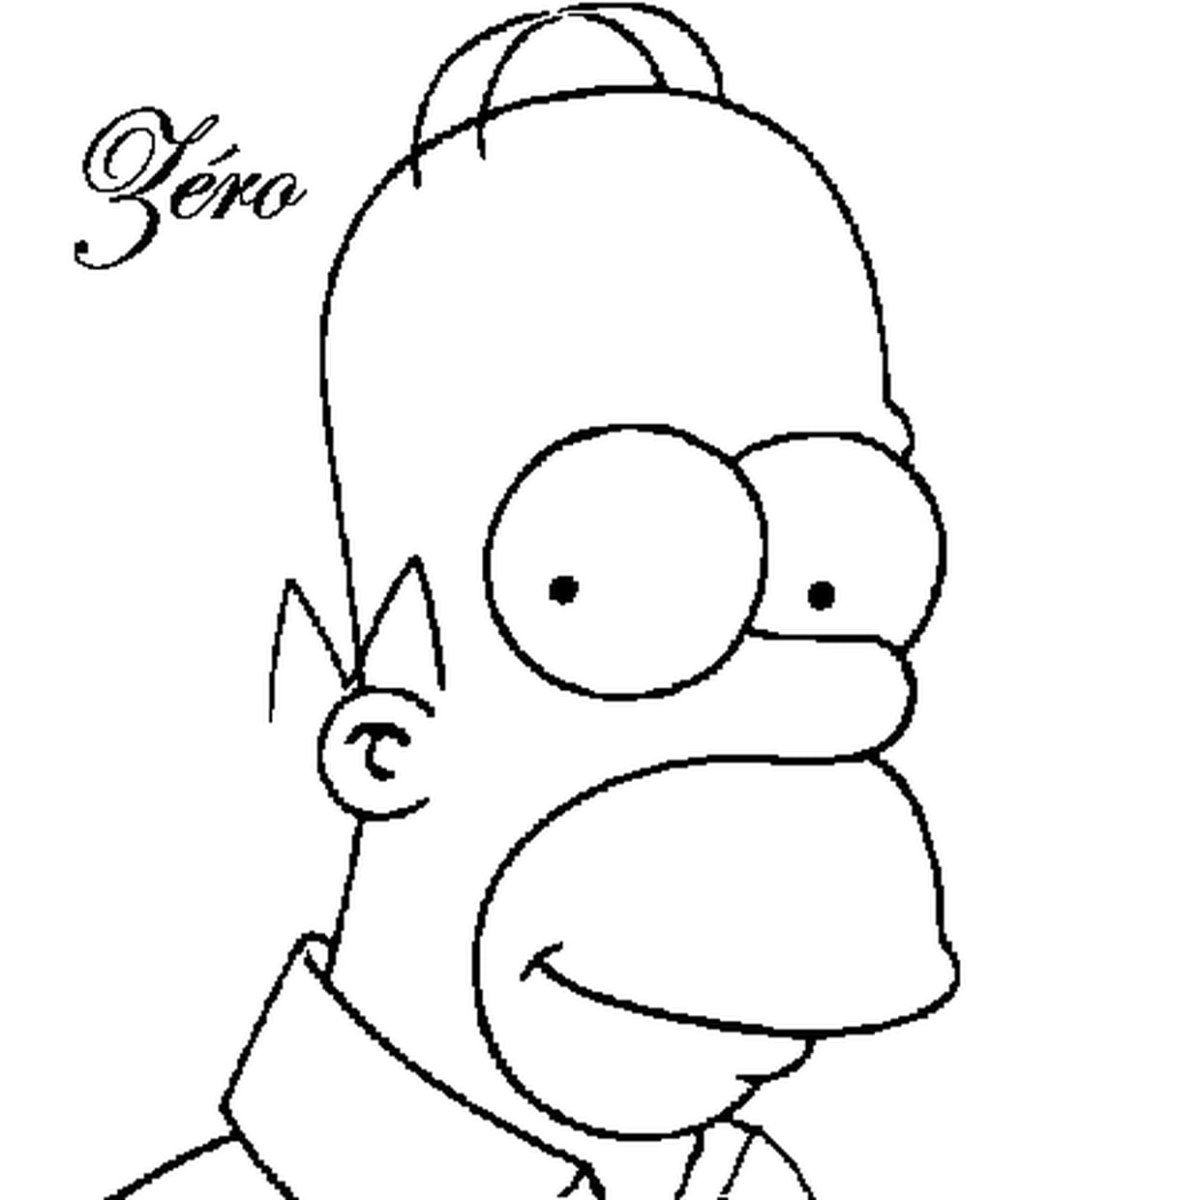 Гомер симпсон рисунок карандашом